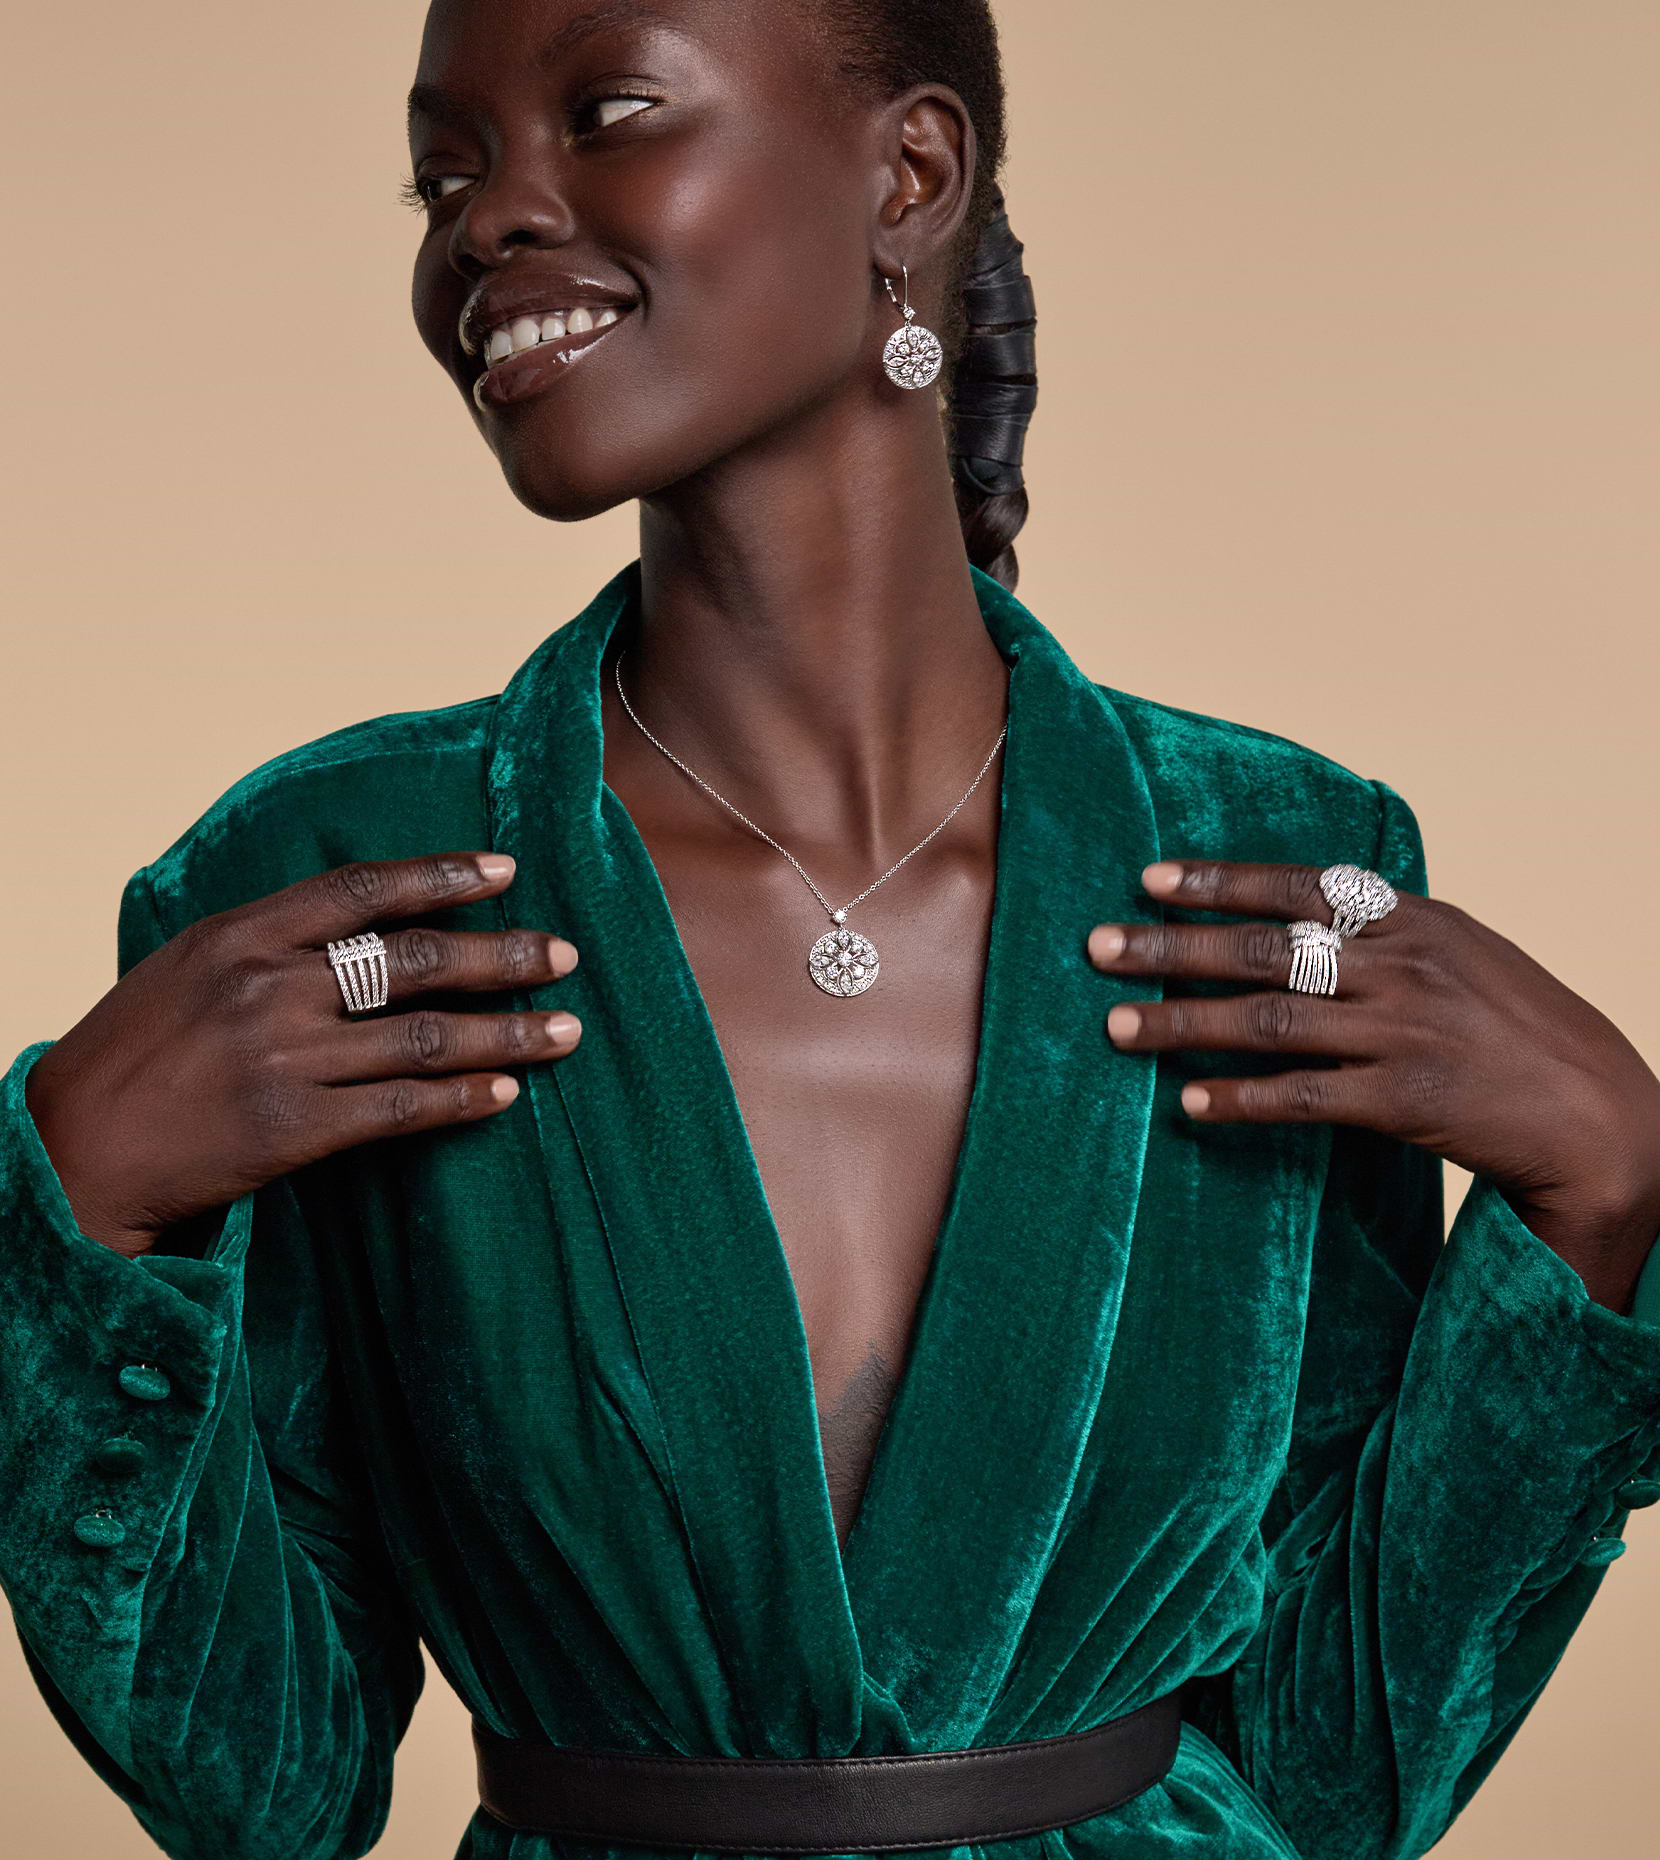 Bild einer lächelnden schwarzen Frau mit Händen auf beiden Seiten ihrer Brust und einem Diamantohrring, einer Halskette und Ringen